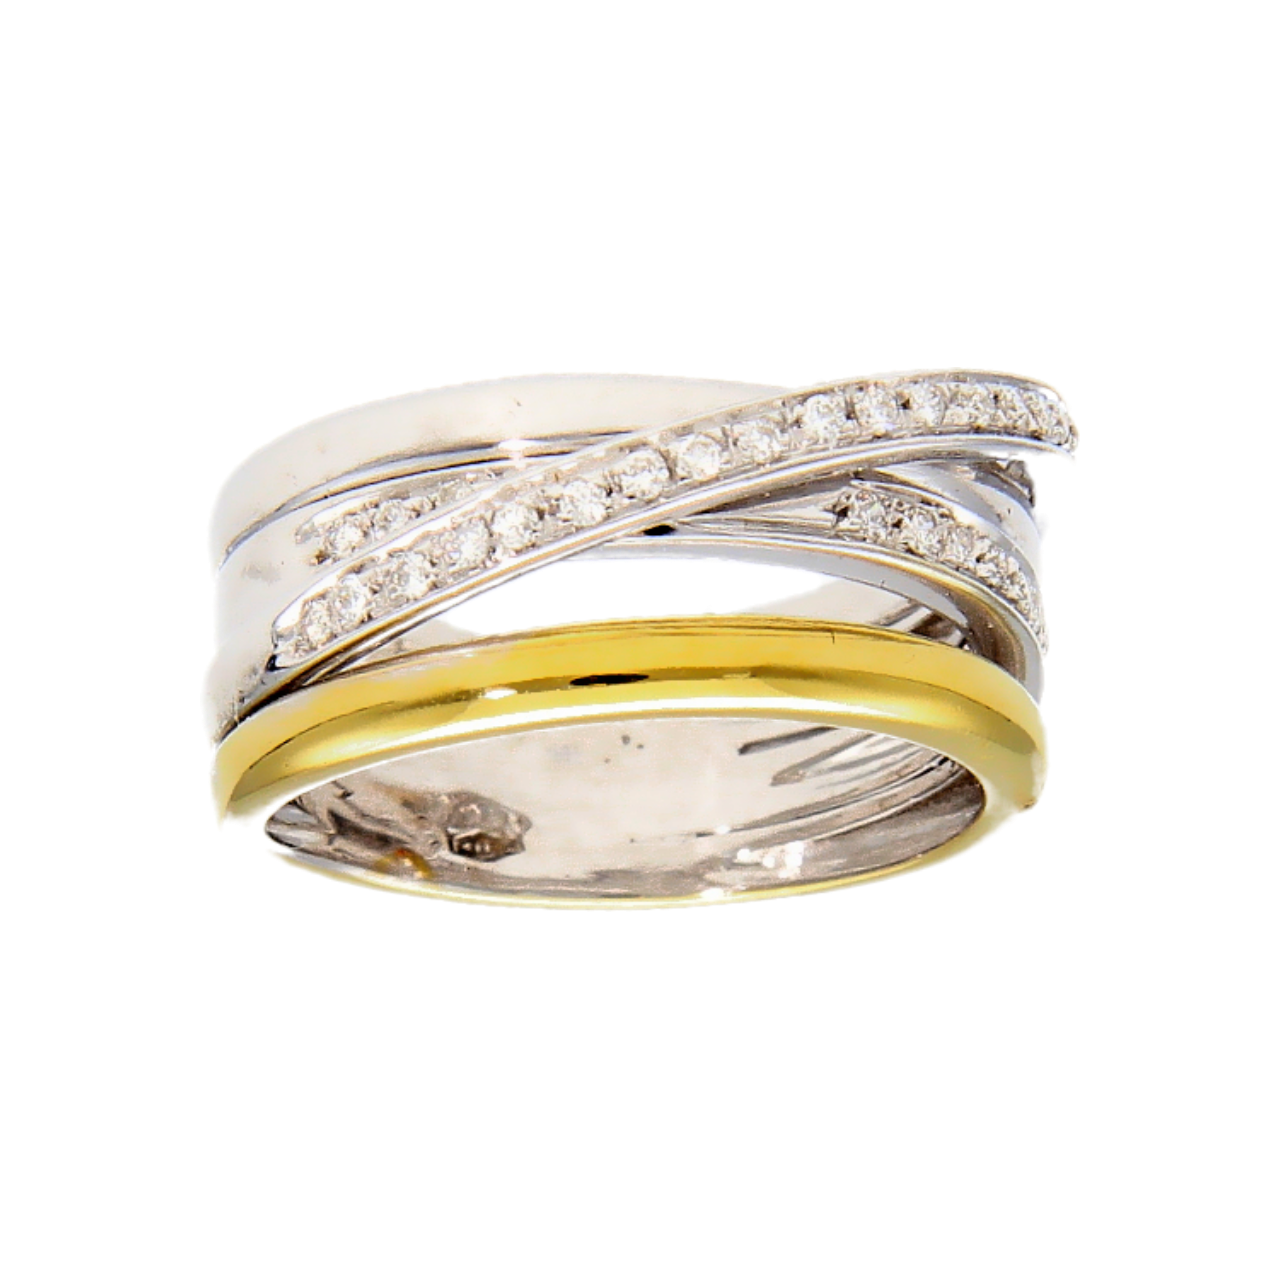 Gelb und Weißgold Ring mit Diamanten ct. 0.42 VVS1 Farbe F.